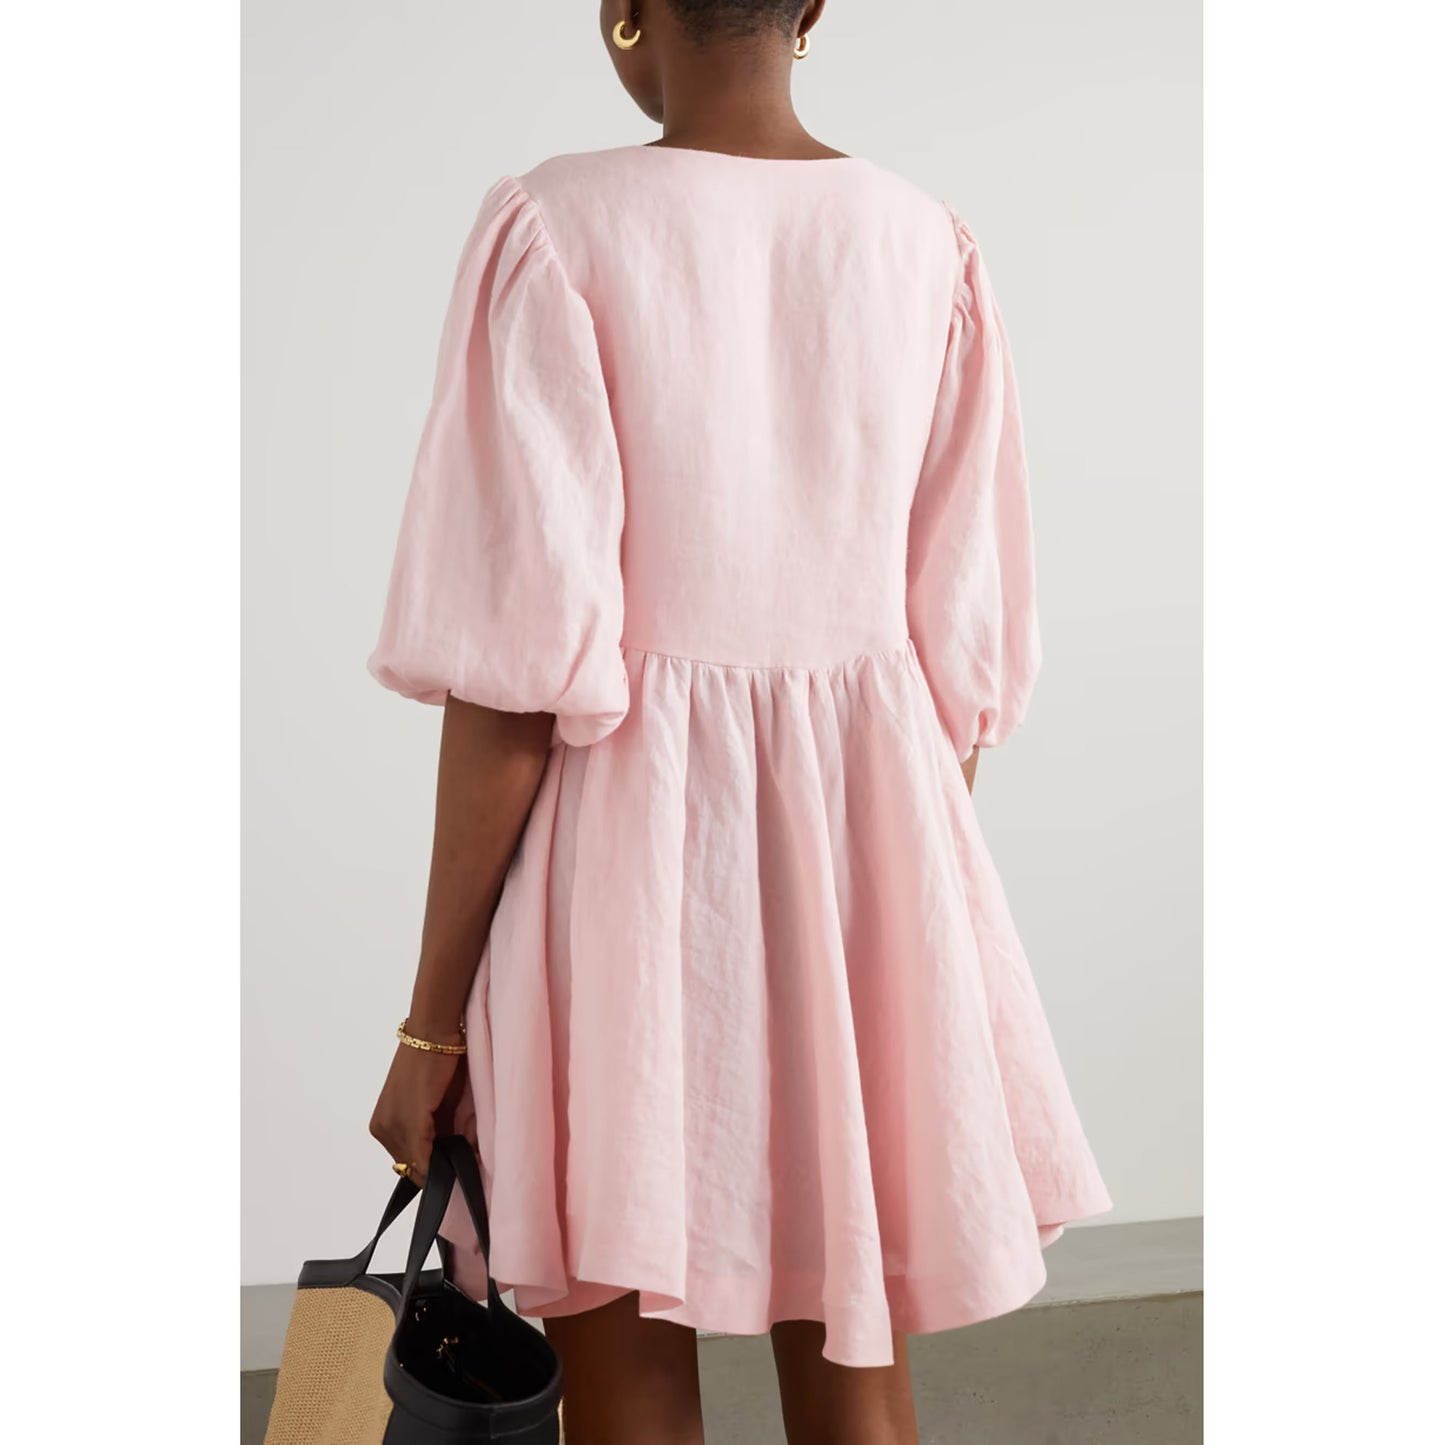 Fil De Vie Pink Ramie "Mina" Mini Dress, size Small